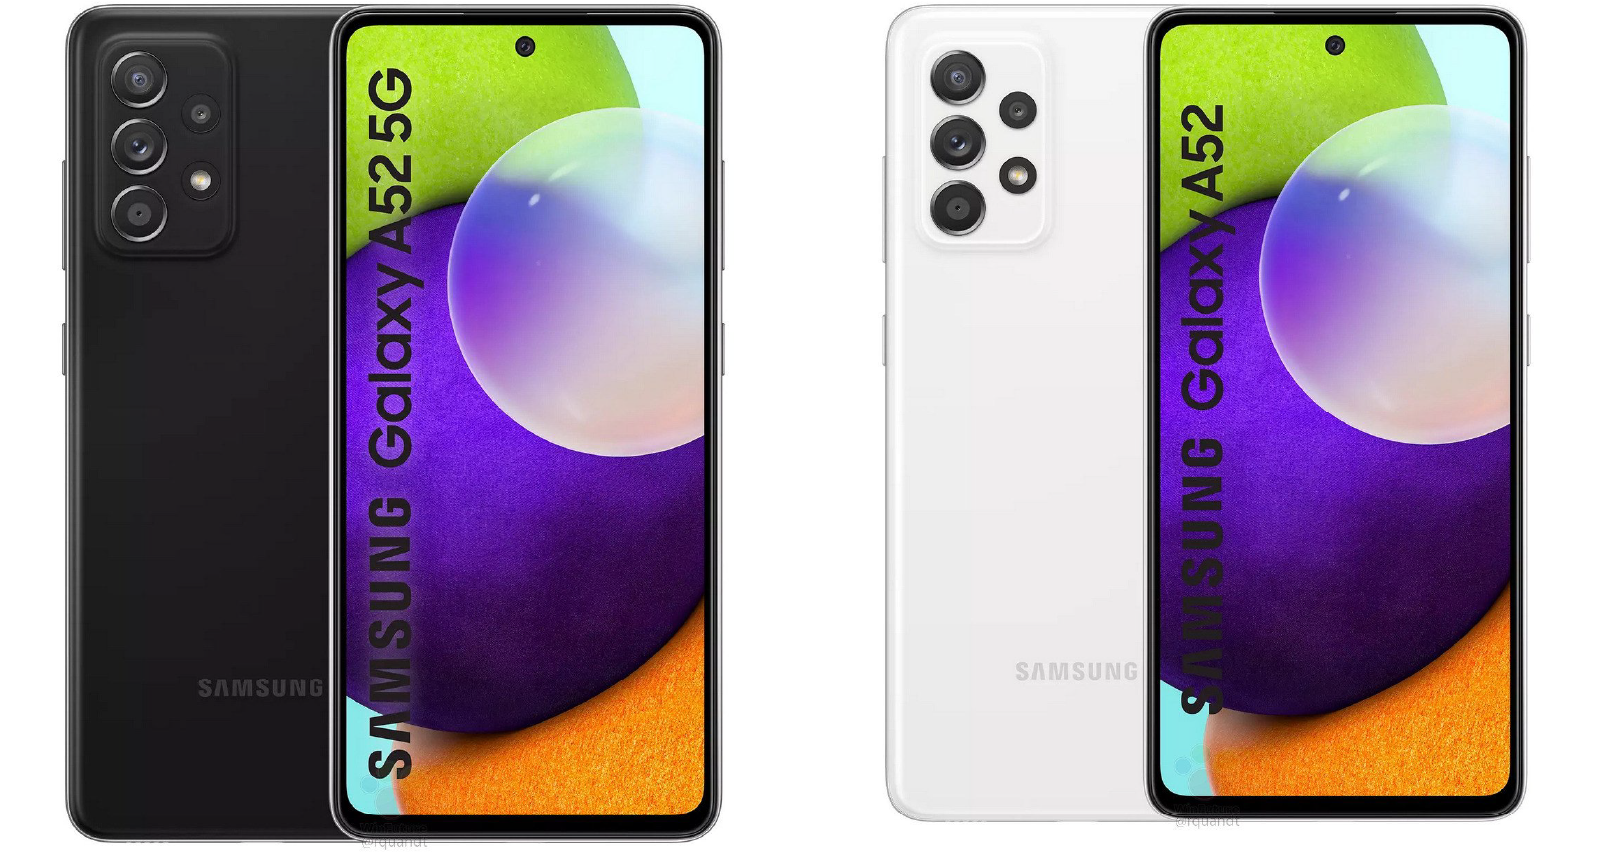 Samsung Galaxy A72 6GB/128GB (SM-A725) modrá